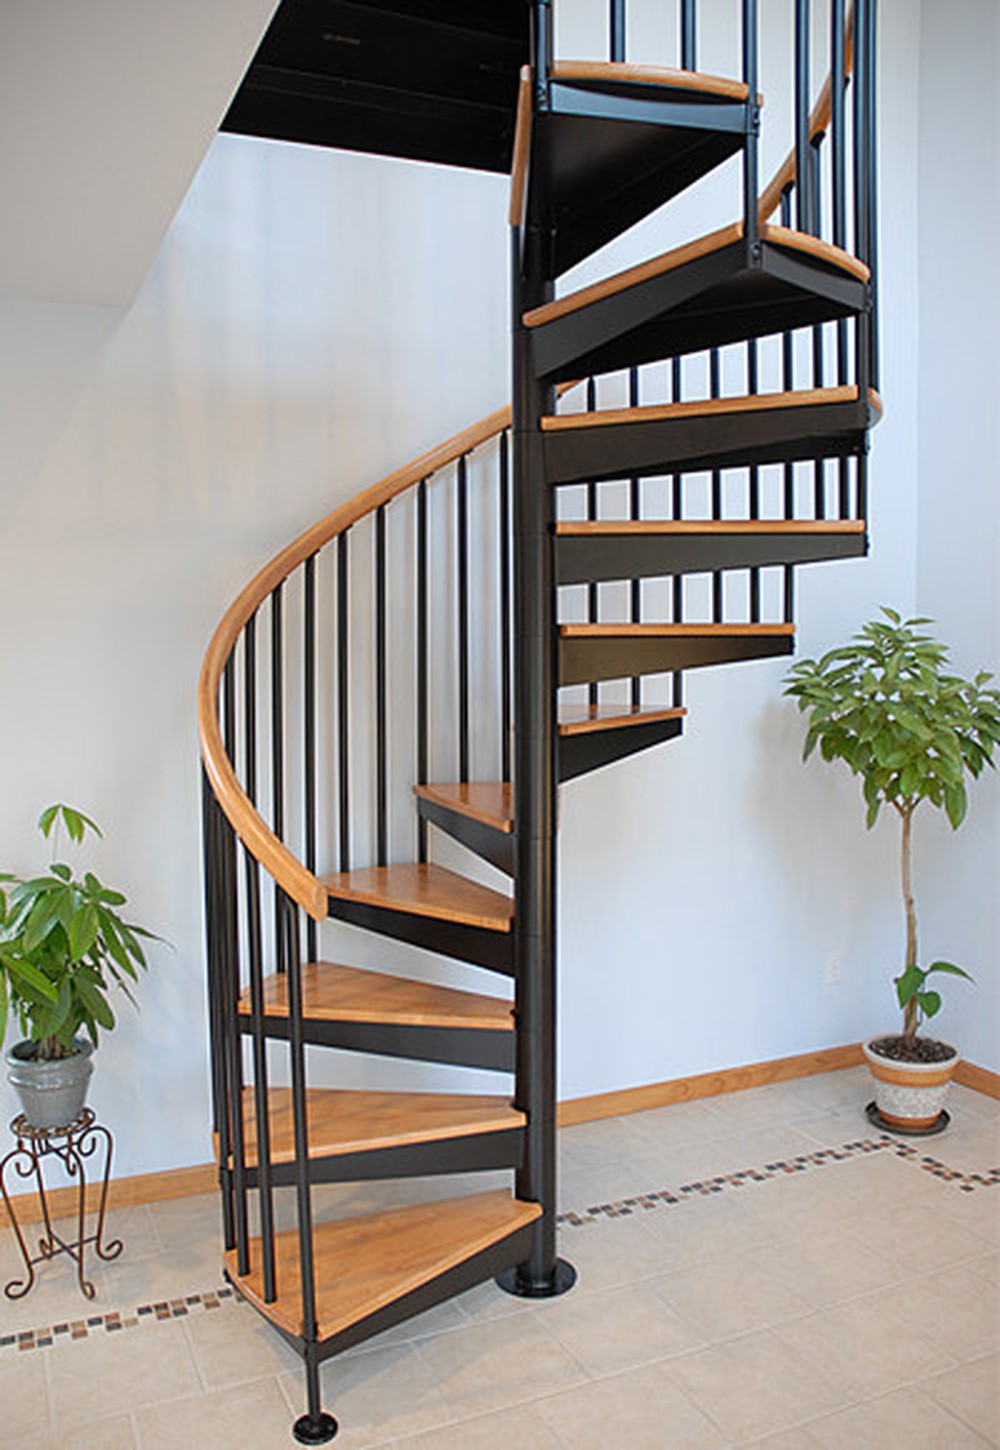 Cầu thang xoắn ốc là một giải pháp thiết kế tuyệt vời cho không gian nhỏ hẹp. Thi công cầu thang xoắn ốc sẽ tạo ra một điểm nhấn nghệ thuật và sự độc đáo cho ngôi nhà của bạn.